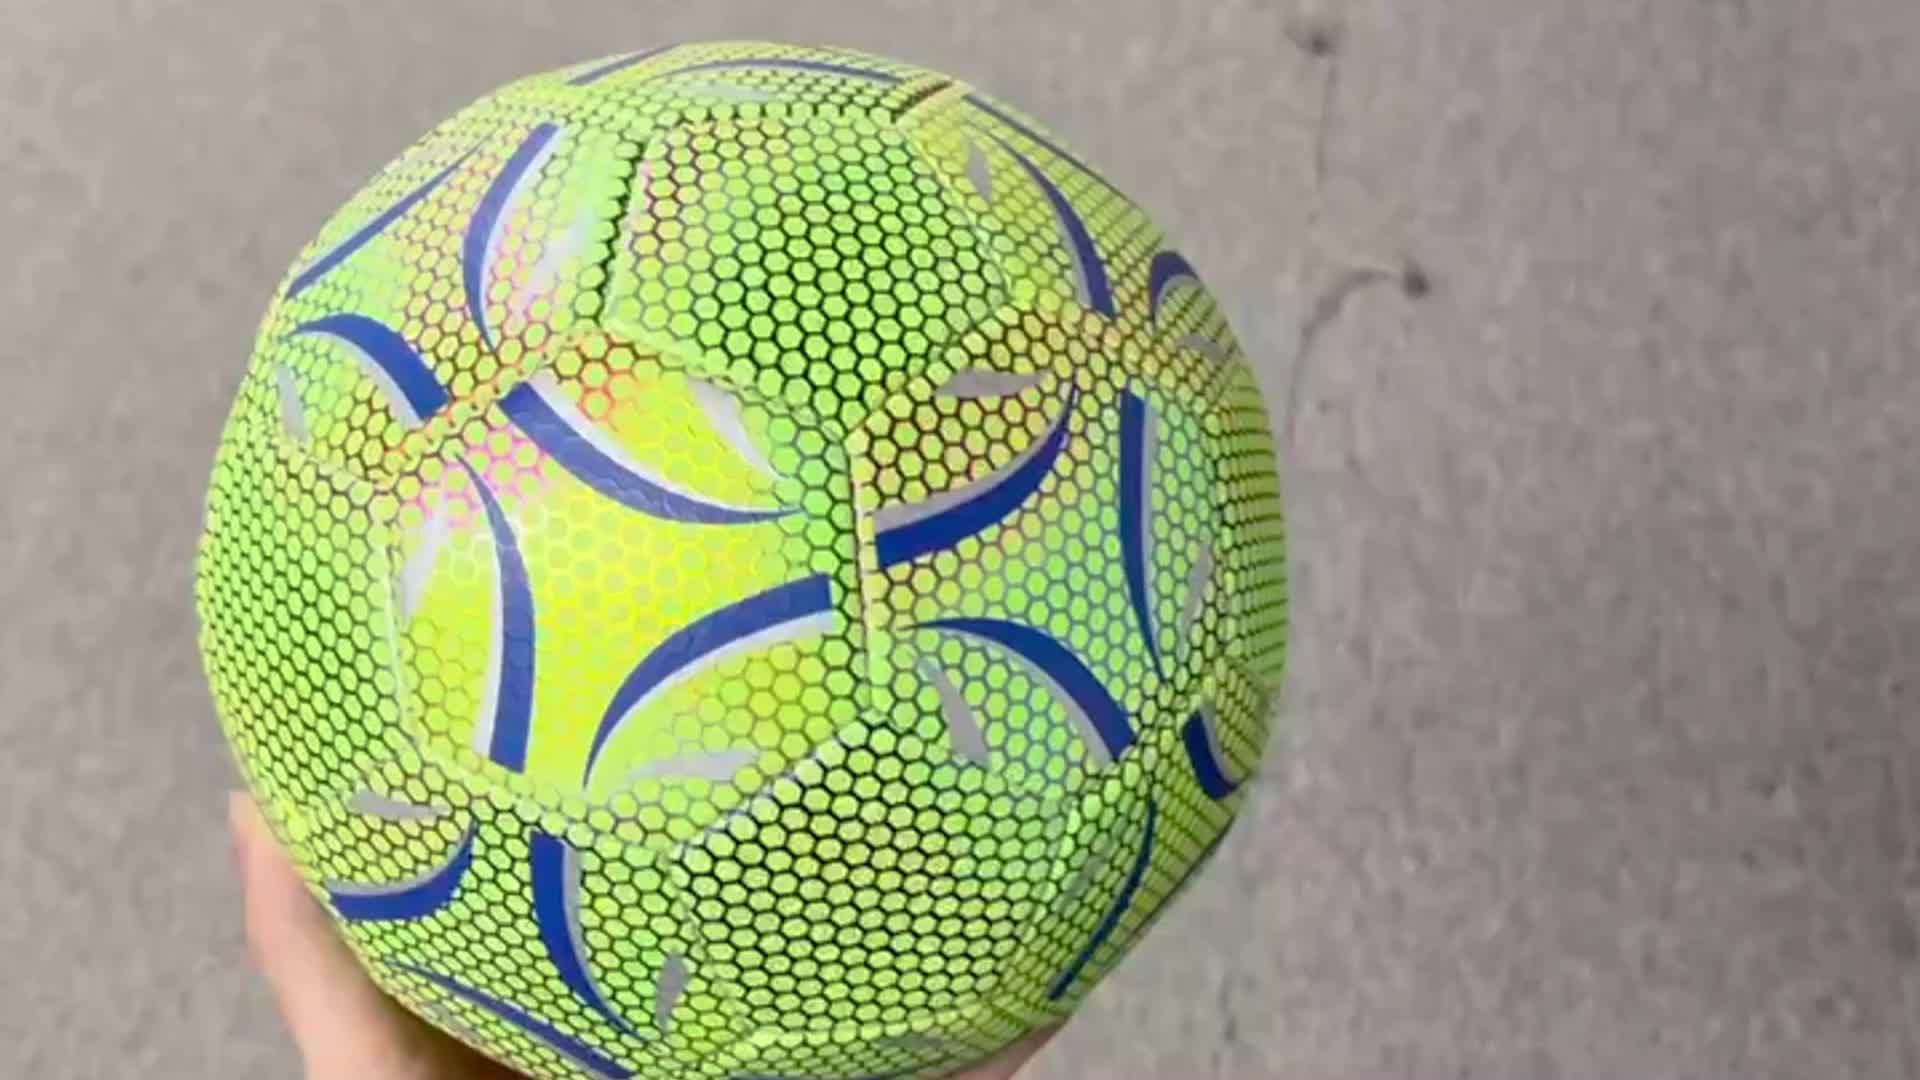 Aceshop Ballon de Football Lumineux - Réfléchissant